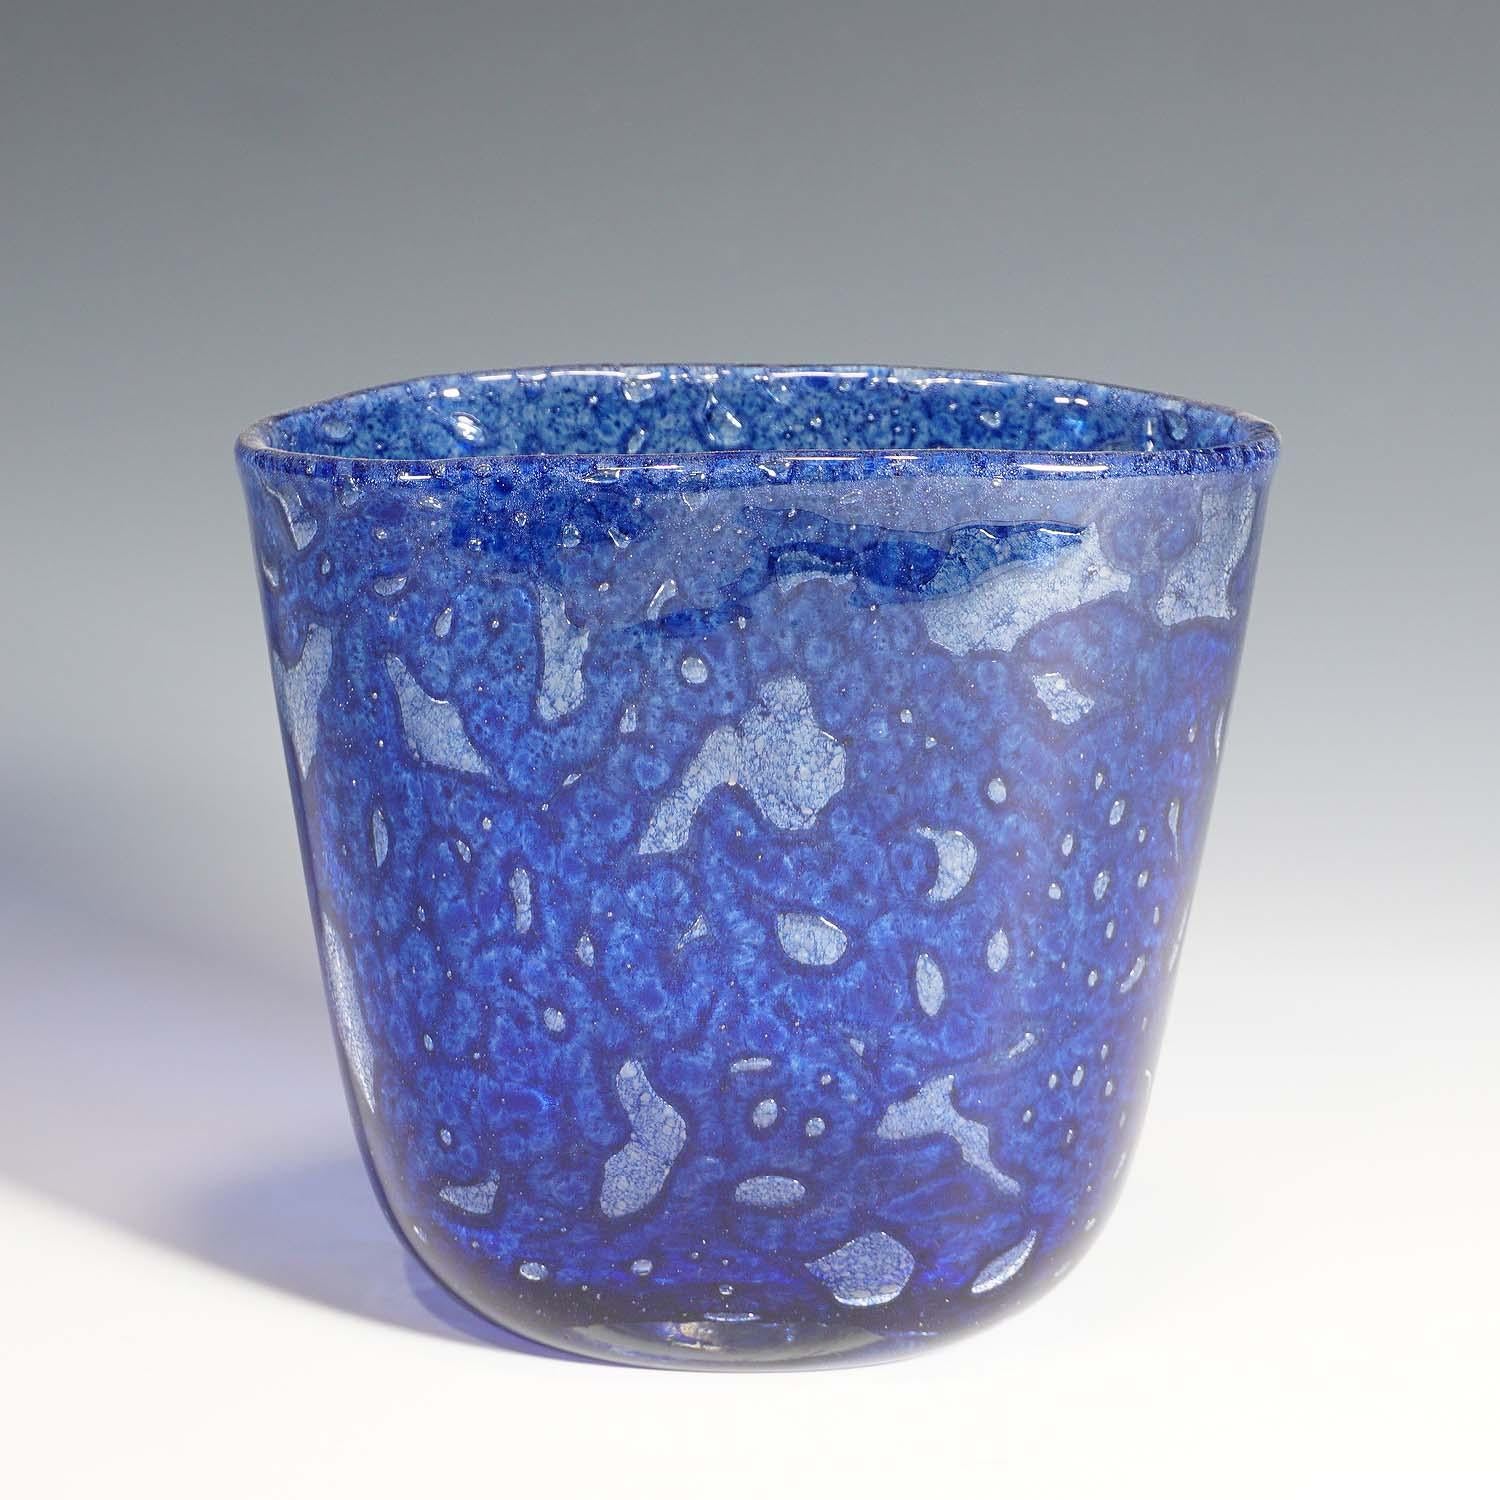 Ercol Barovier - Barovier&Toso Vase Efeso ca. 1960s

Un grand vase bleu de la série 